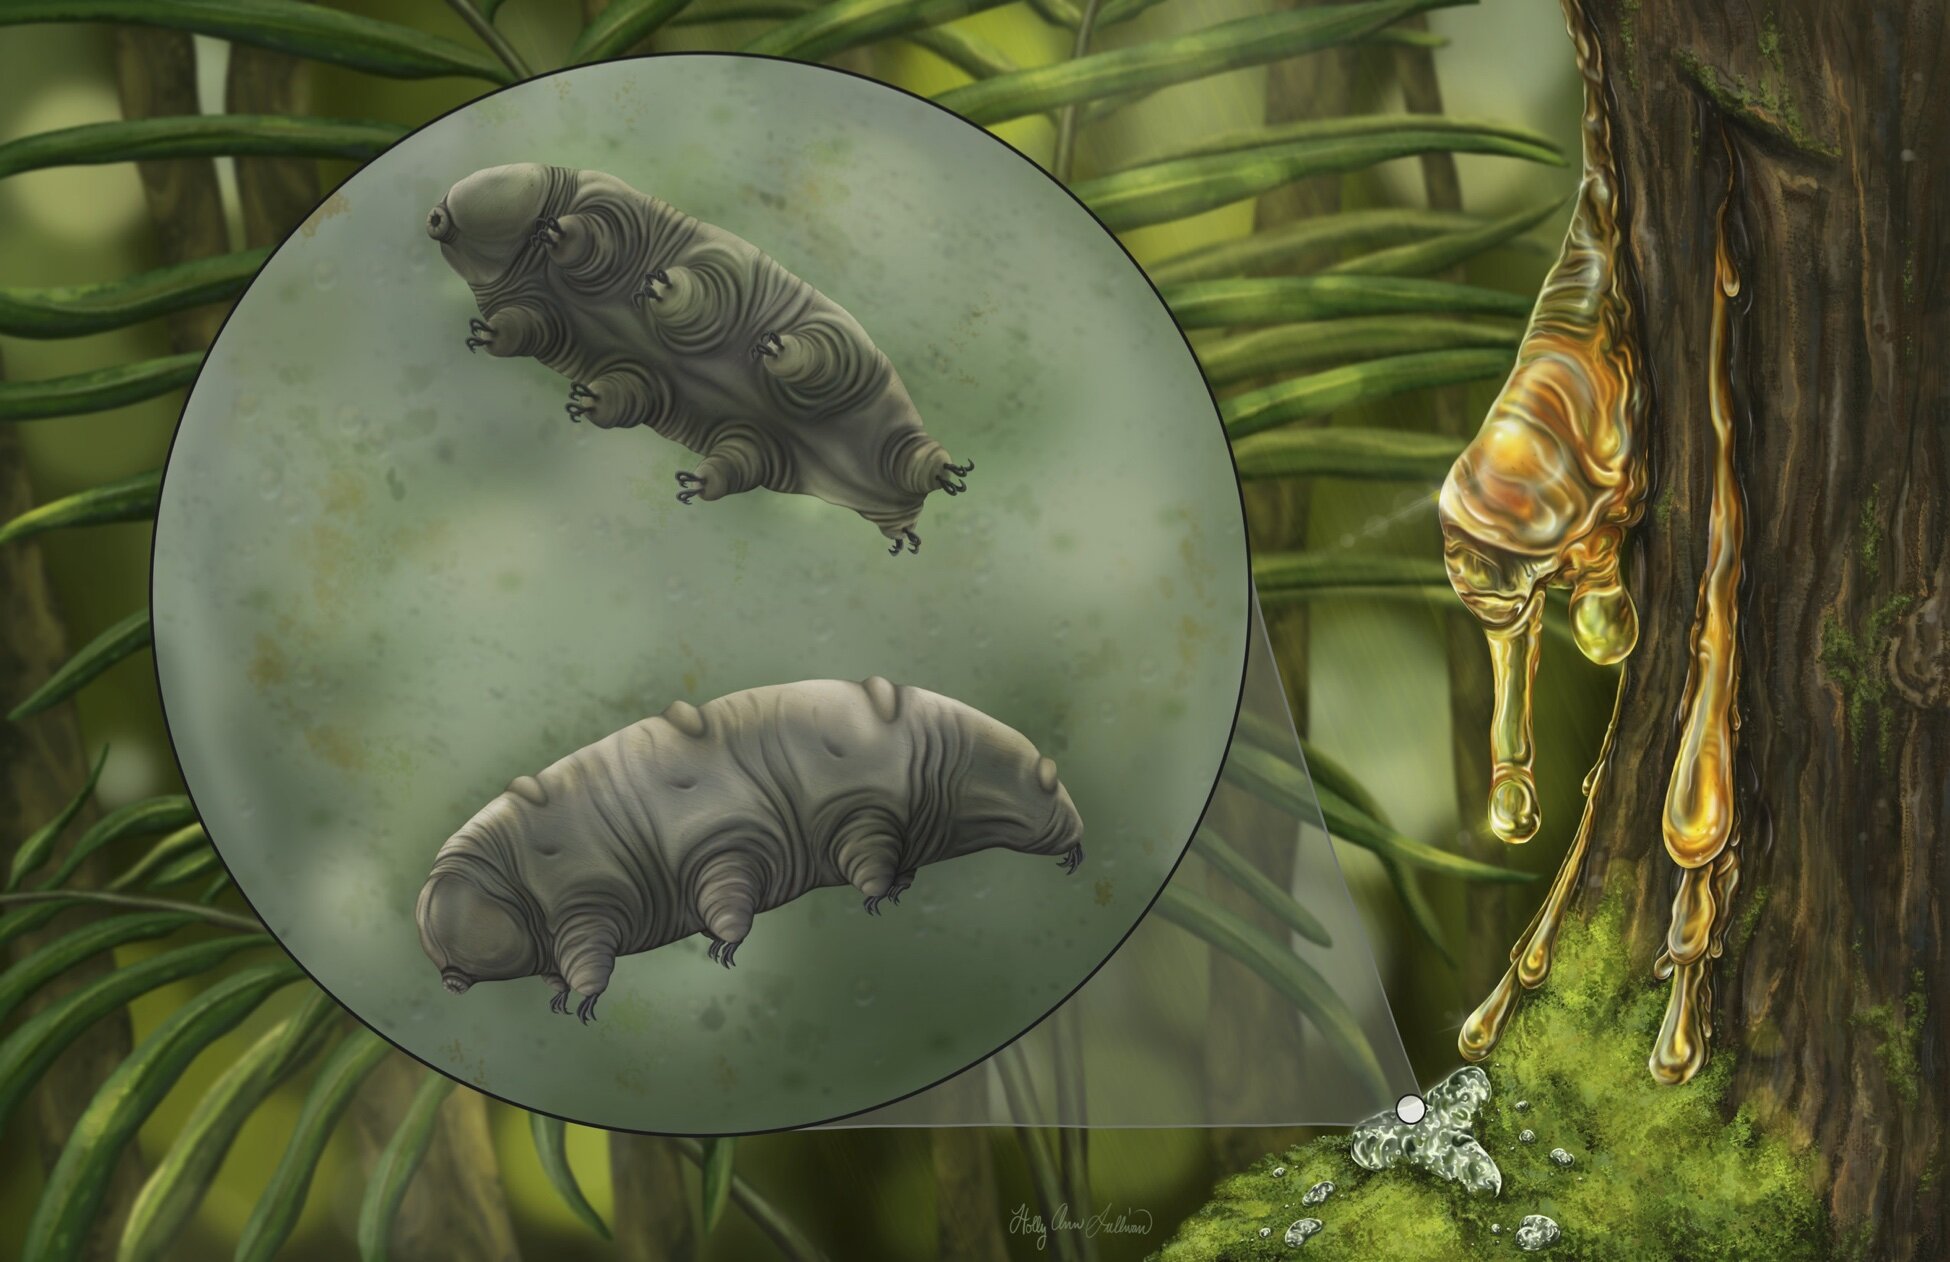 多米尼加共和国琥珀中发现1600万年前的缓步动物新物种